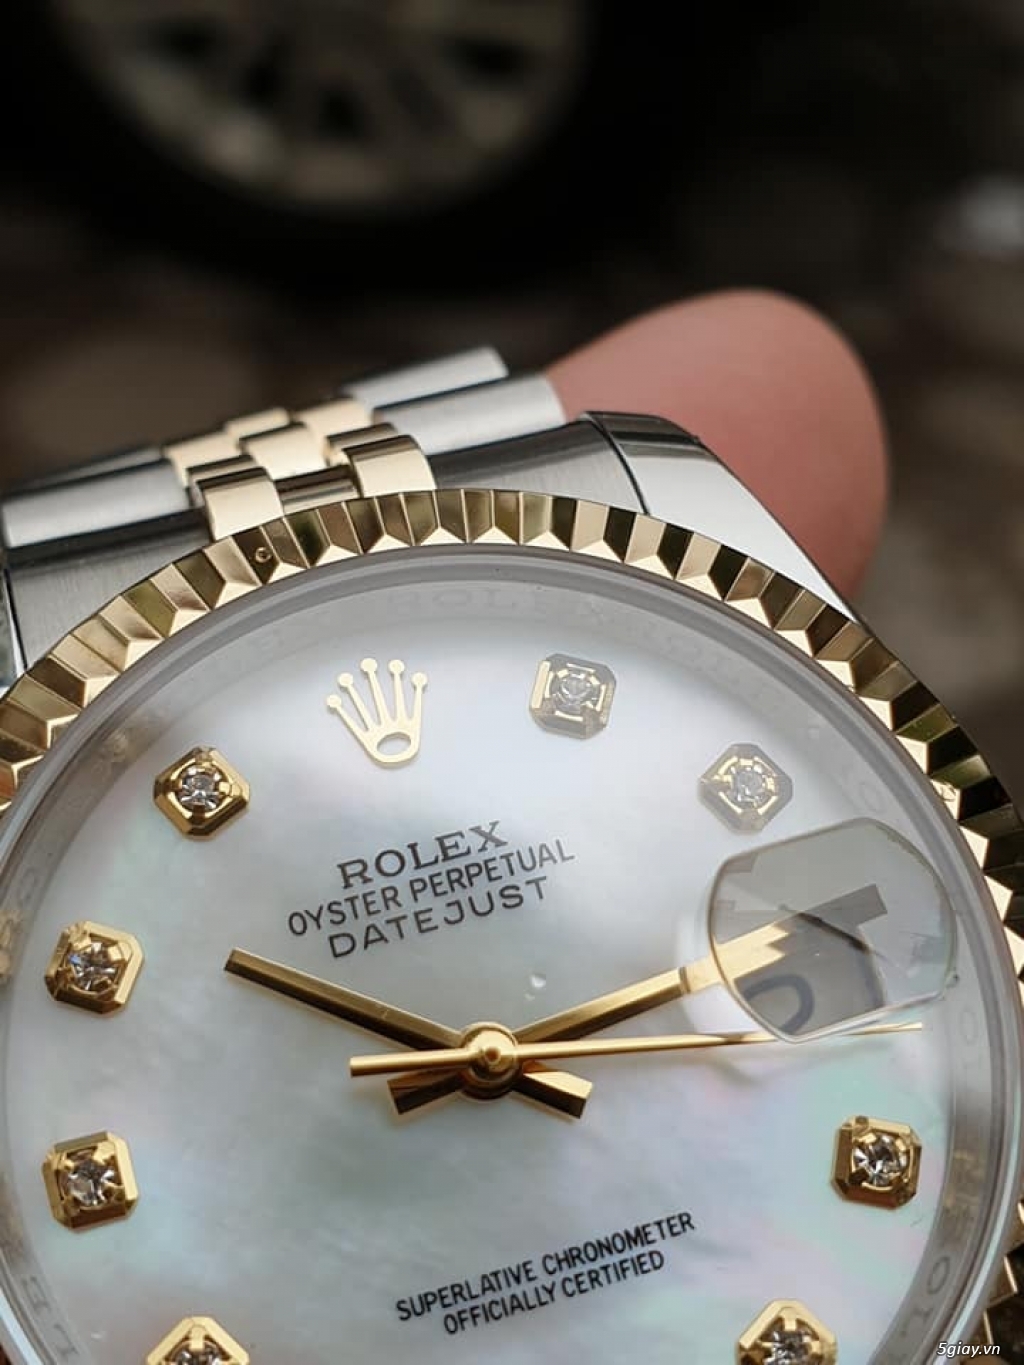 Chuyên Rolex bọc vàng 18k,độ máy chính hãng,kim cương - 2